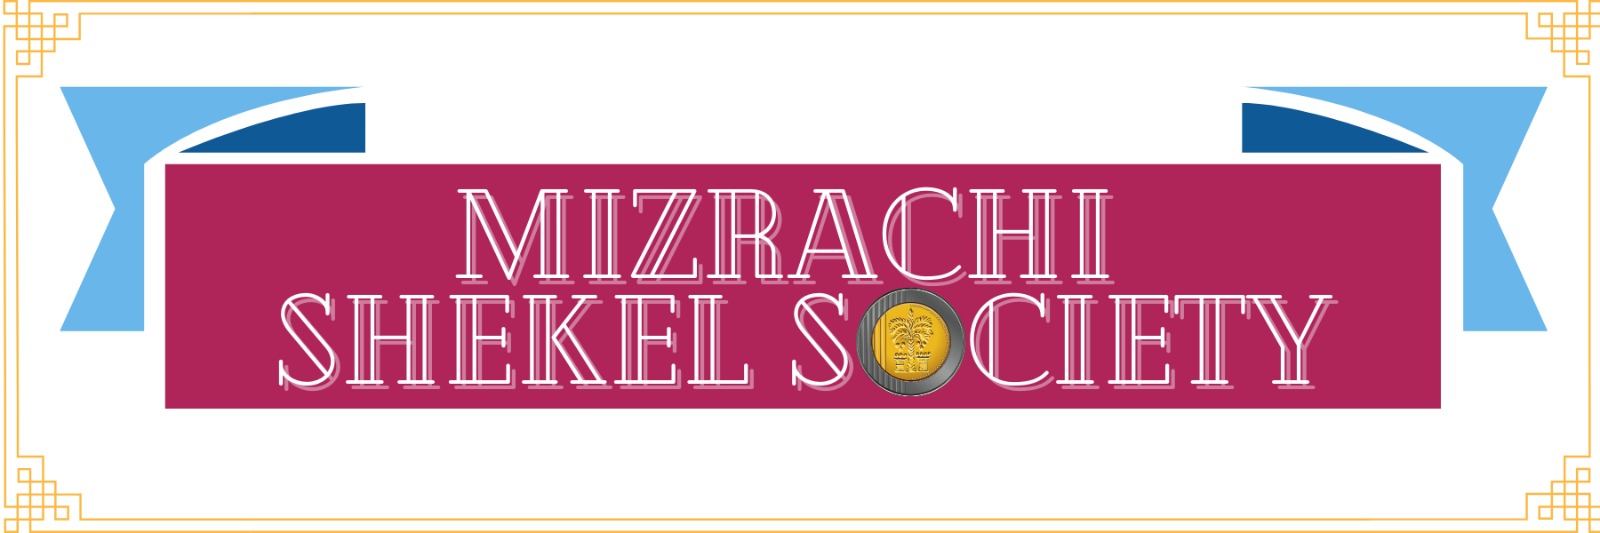 MIZRACHI SHEKEL SOCIETY